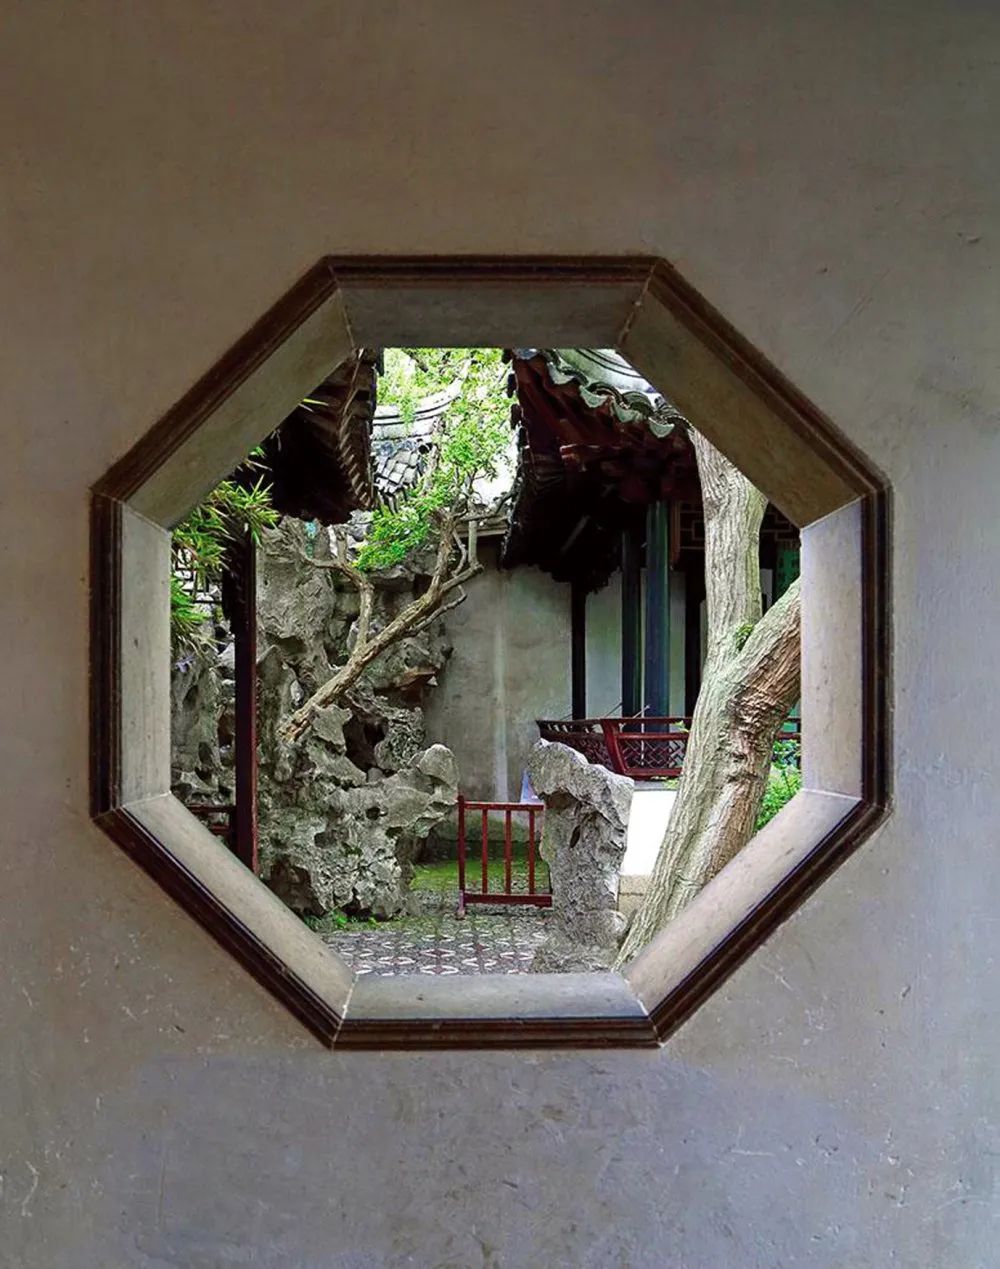 以园石作为框景构图中心的例子也很多苏州古园,园即是宅,宅即是园